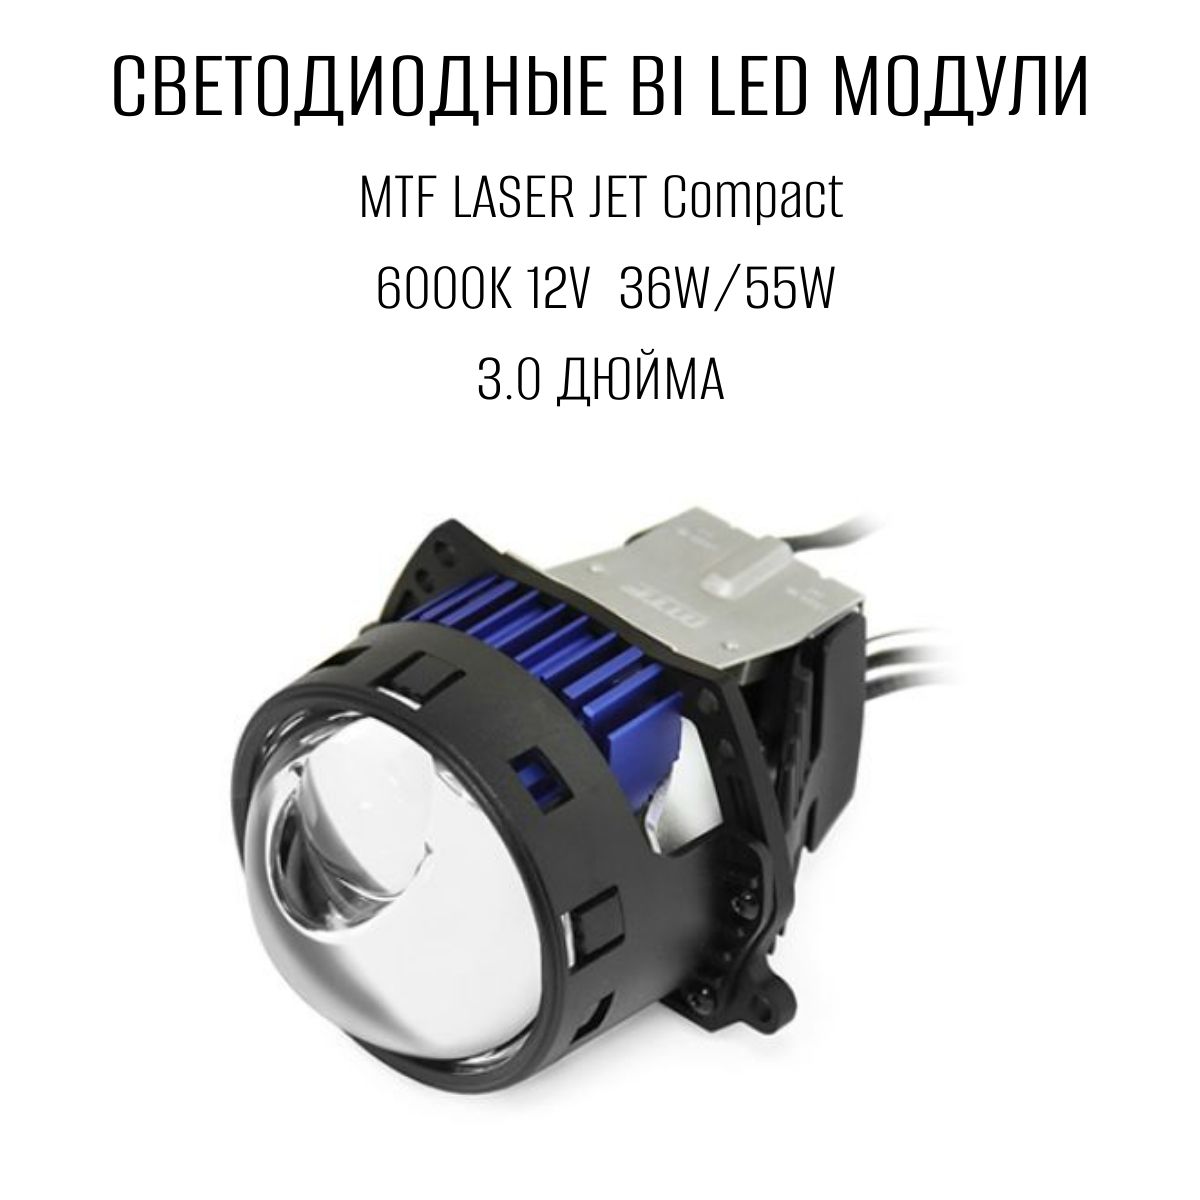 Bi led лазерные. MTF Light Laser Jet bi-led 3.0 6000k линзы. Линзы МТФ би лед. Линзы МТФ би лед Jet 3 дюйма. MTF LASERJET bi led.